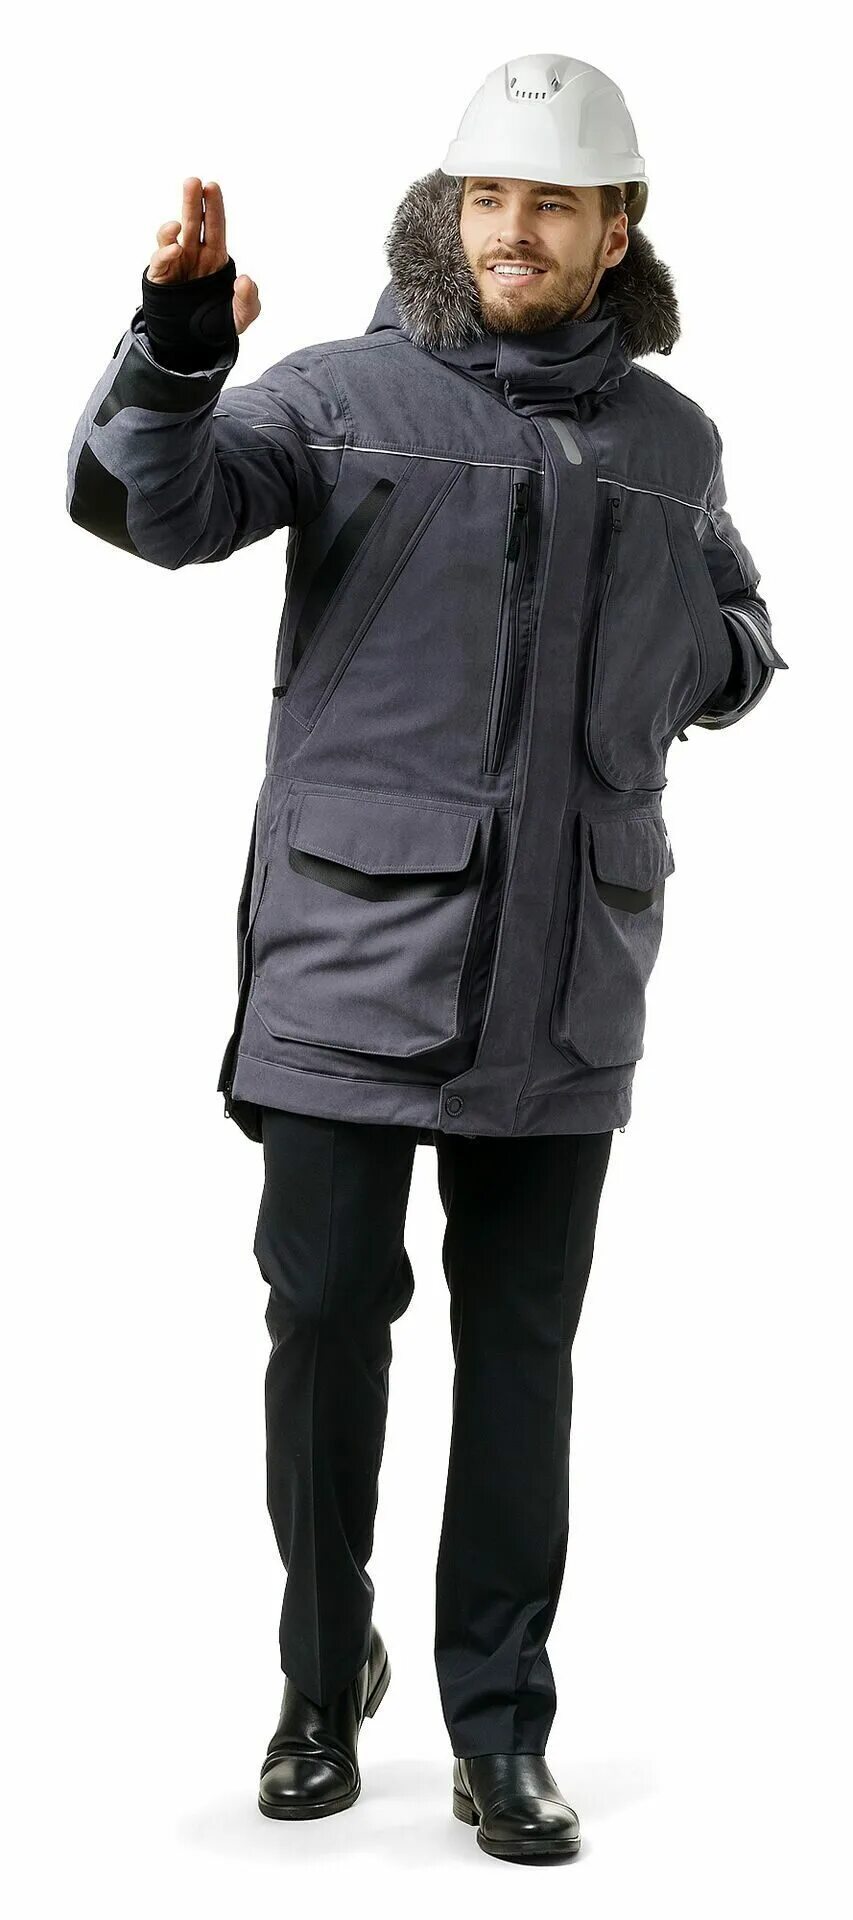 Куртка парка мужская Фокс Техноавиа. Куртка зимняя Фокс Техноавиа. Куртка мужская Фокс Техноавиа. Куртки Техноавиа мужские зимние. Спецодежда куртки зимние мужские